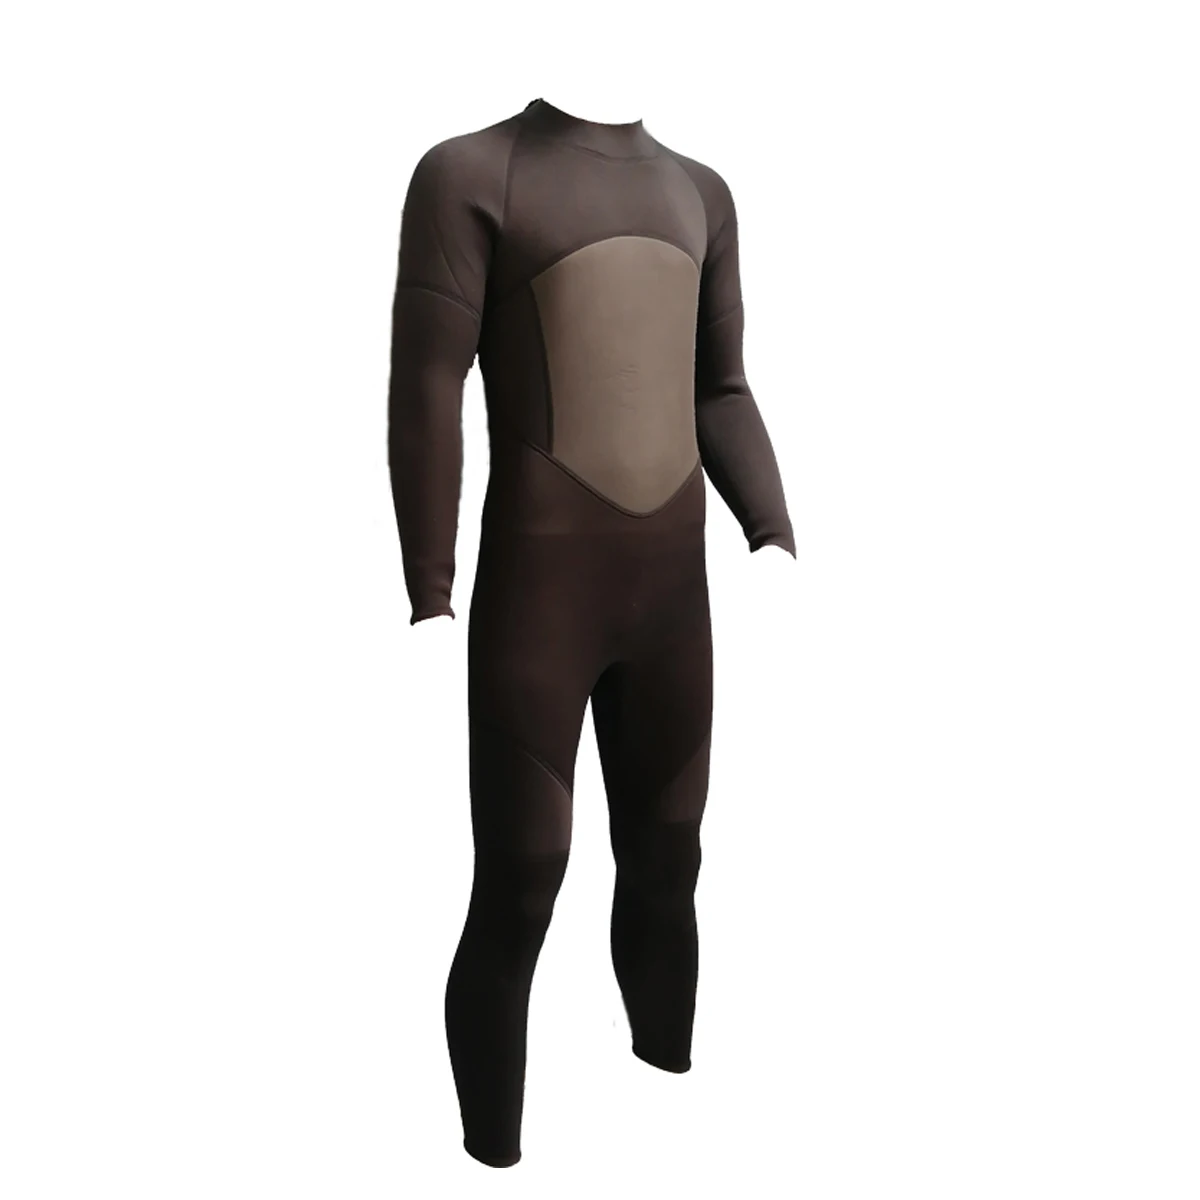 OEM сервис для женщин и мужчин, супер эластичный водонепроницаемый неопреновый костюм для дайвинга 3 мм с молнией (1600300648071)